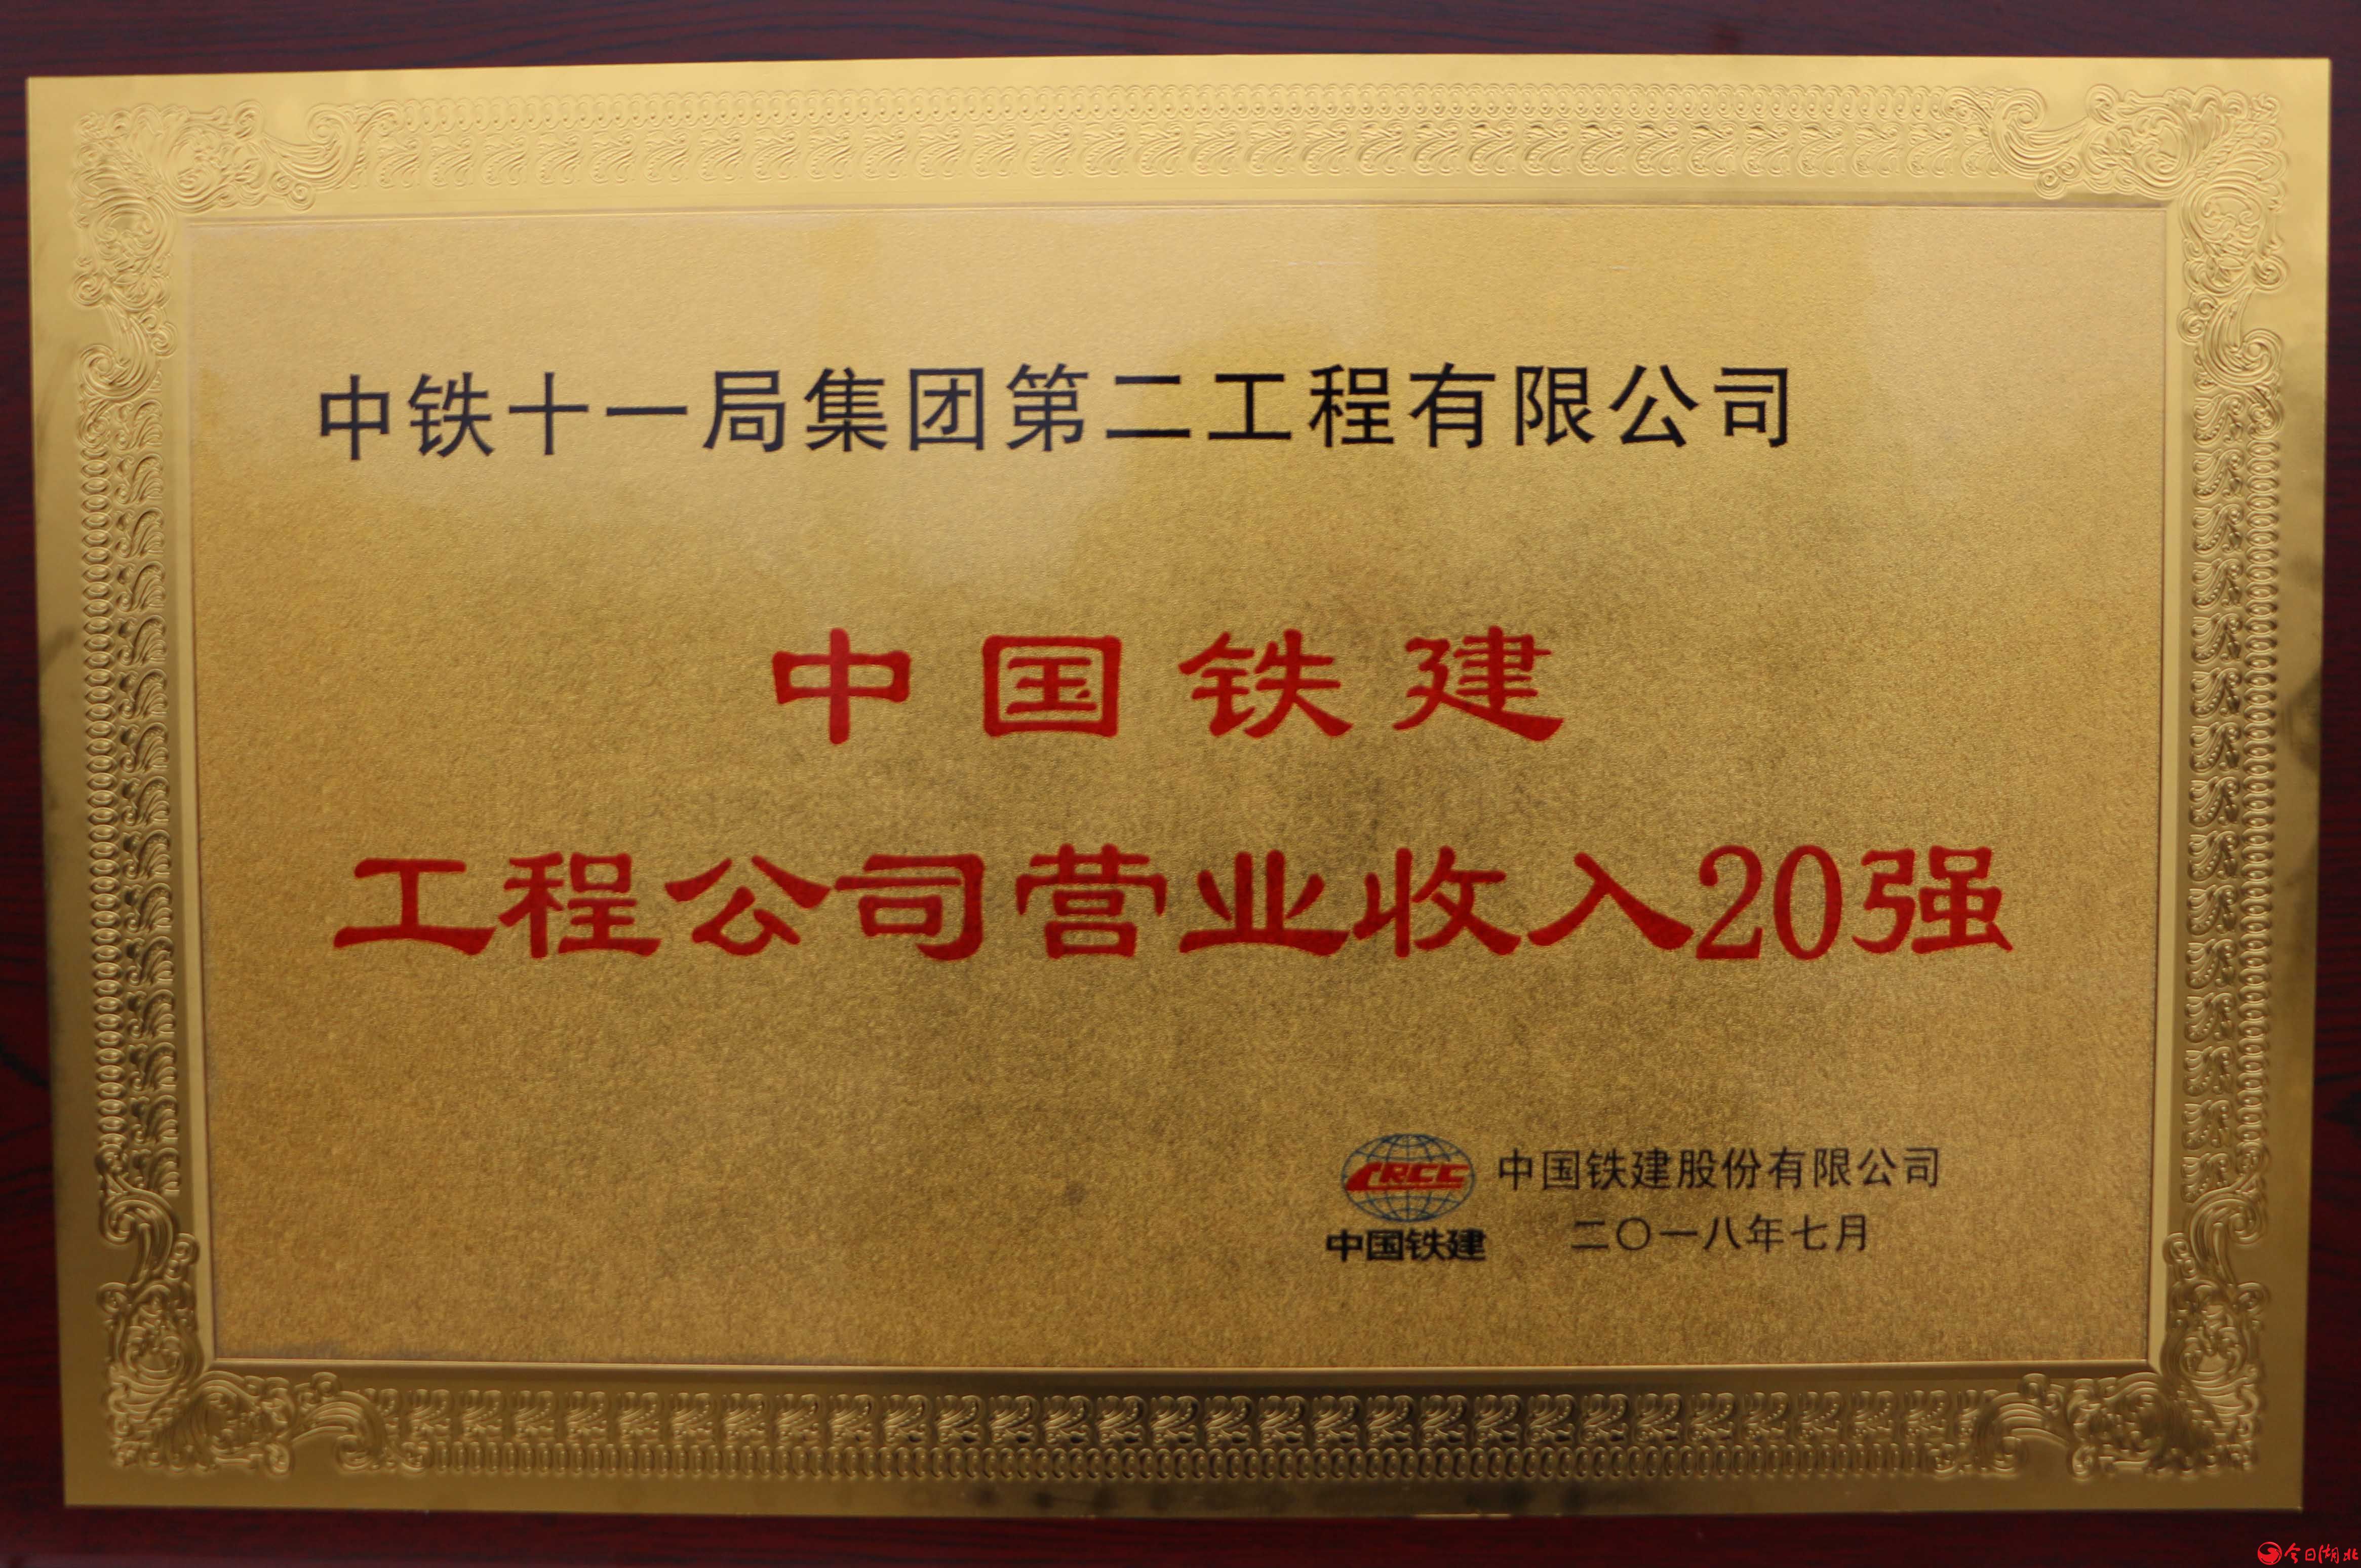 为新中国70华诞献礼,中铁十一局集团员工倾情演绎《我们的青春不一样》9.jpg